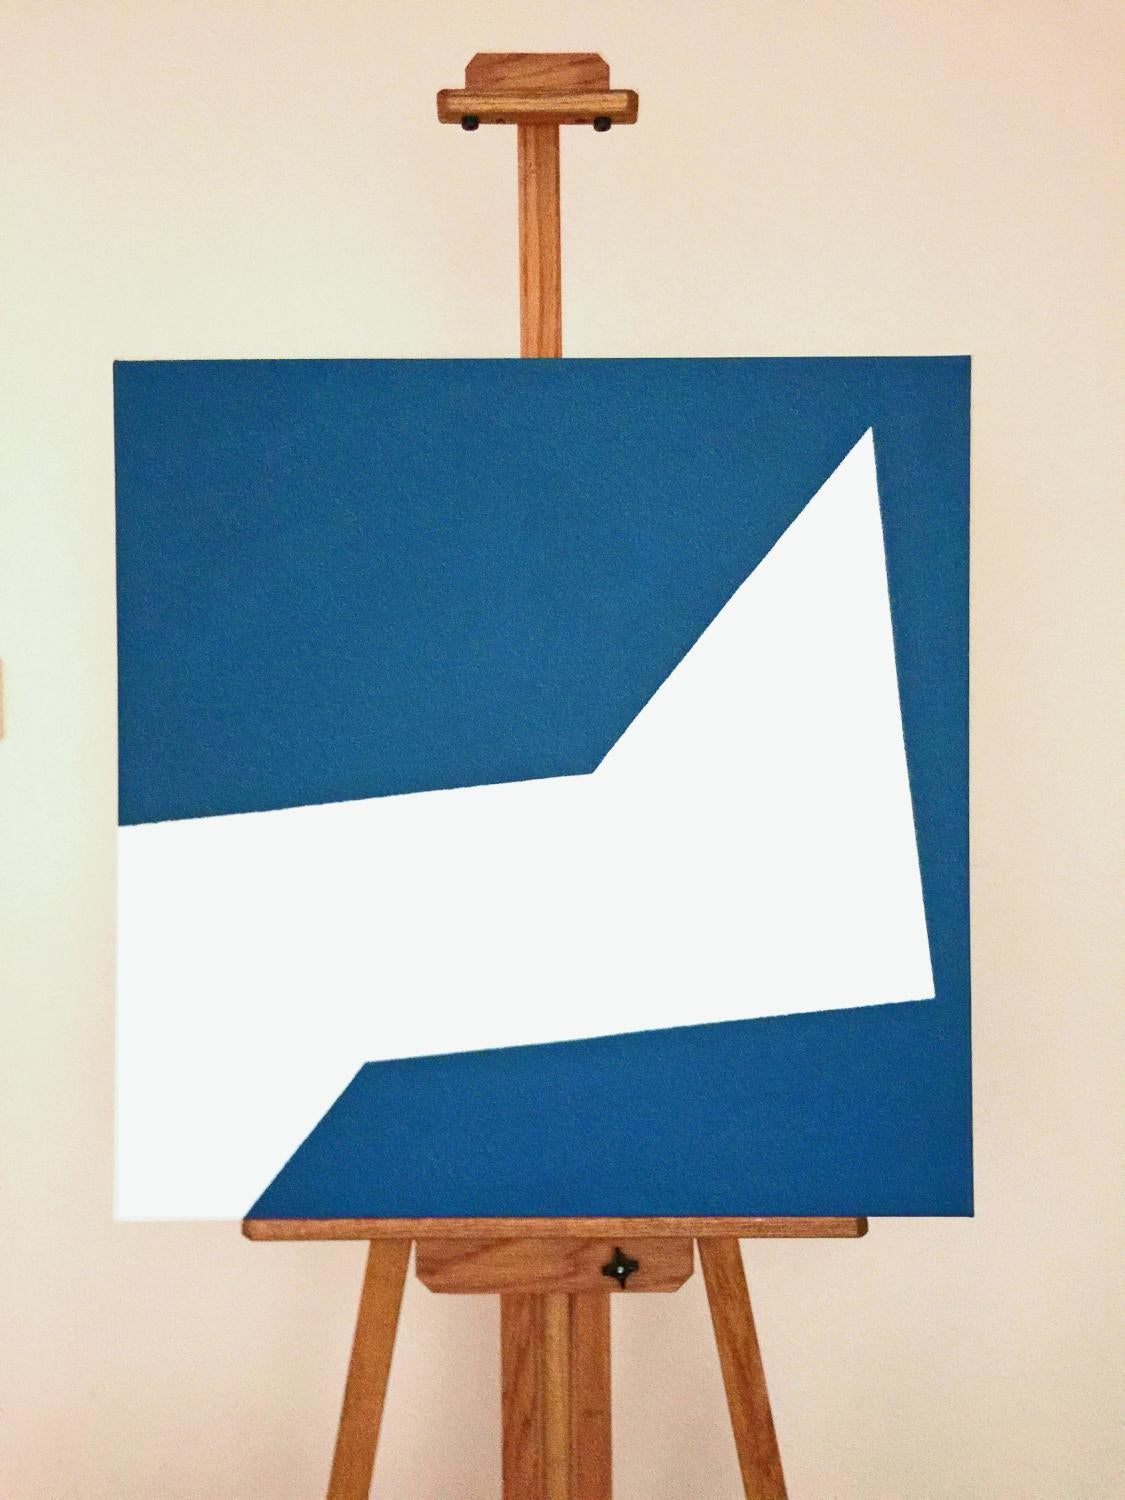 <p>Kommentare der Künstlerin<br>Die Künstlerin Shyun Song malt ein diagonal gebrochenes Quadrat in auffälligen Weiß- und Blautönen. Das minimalistische, abstrakte Werk ist ein kühnes und unmittelbares Statement. Die rechte Seite ist nach unten